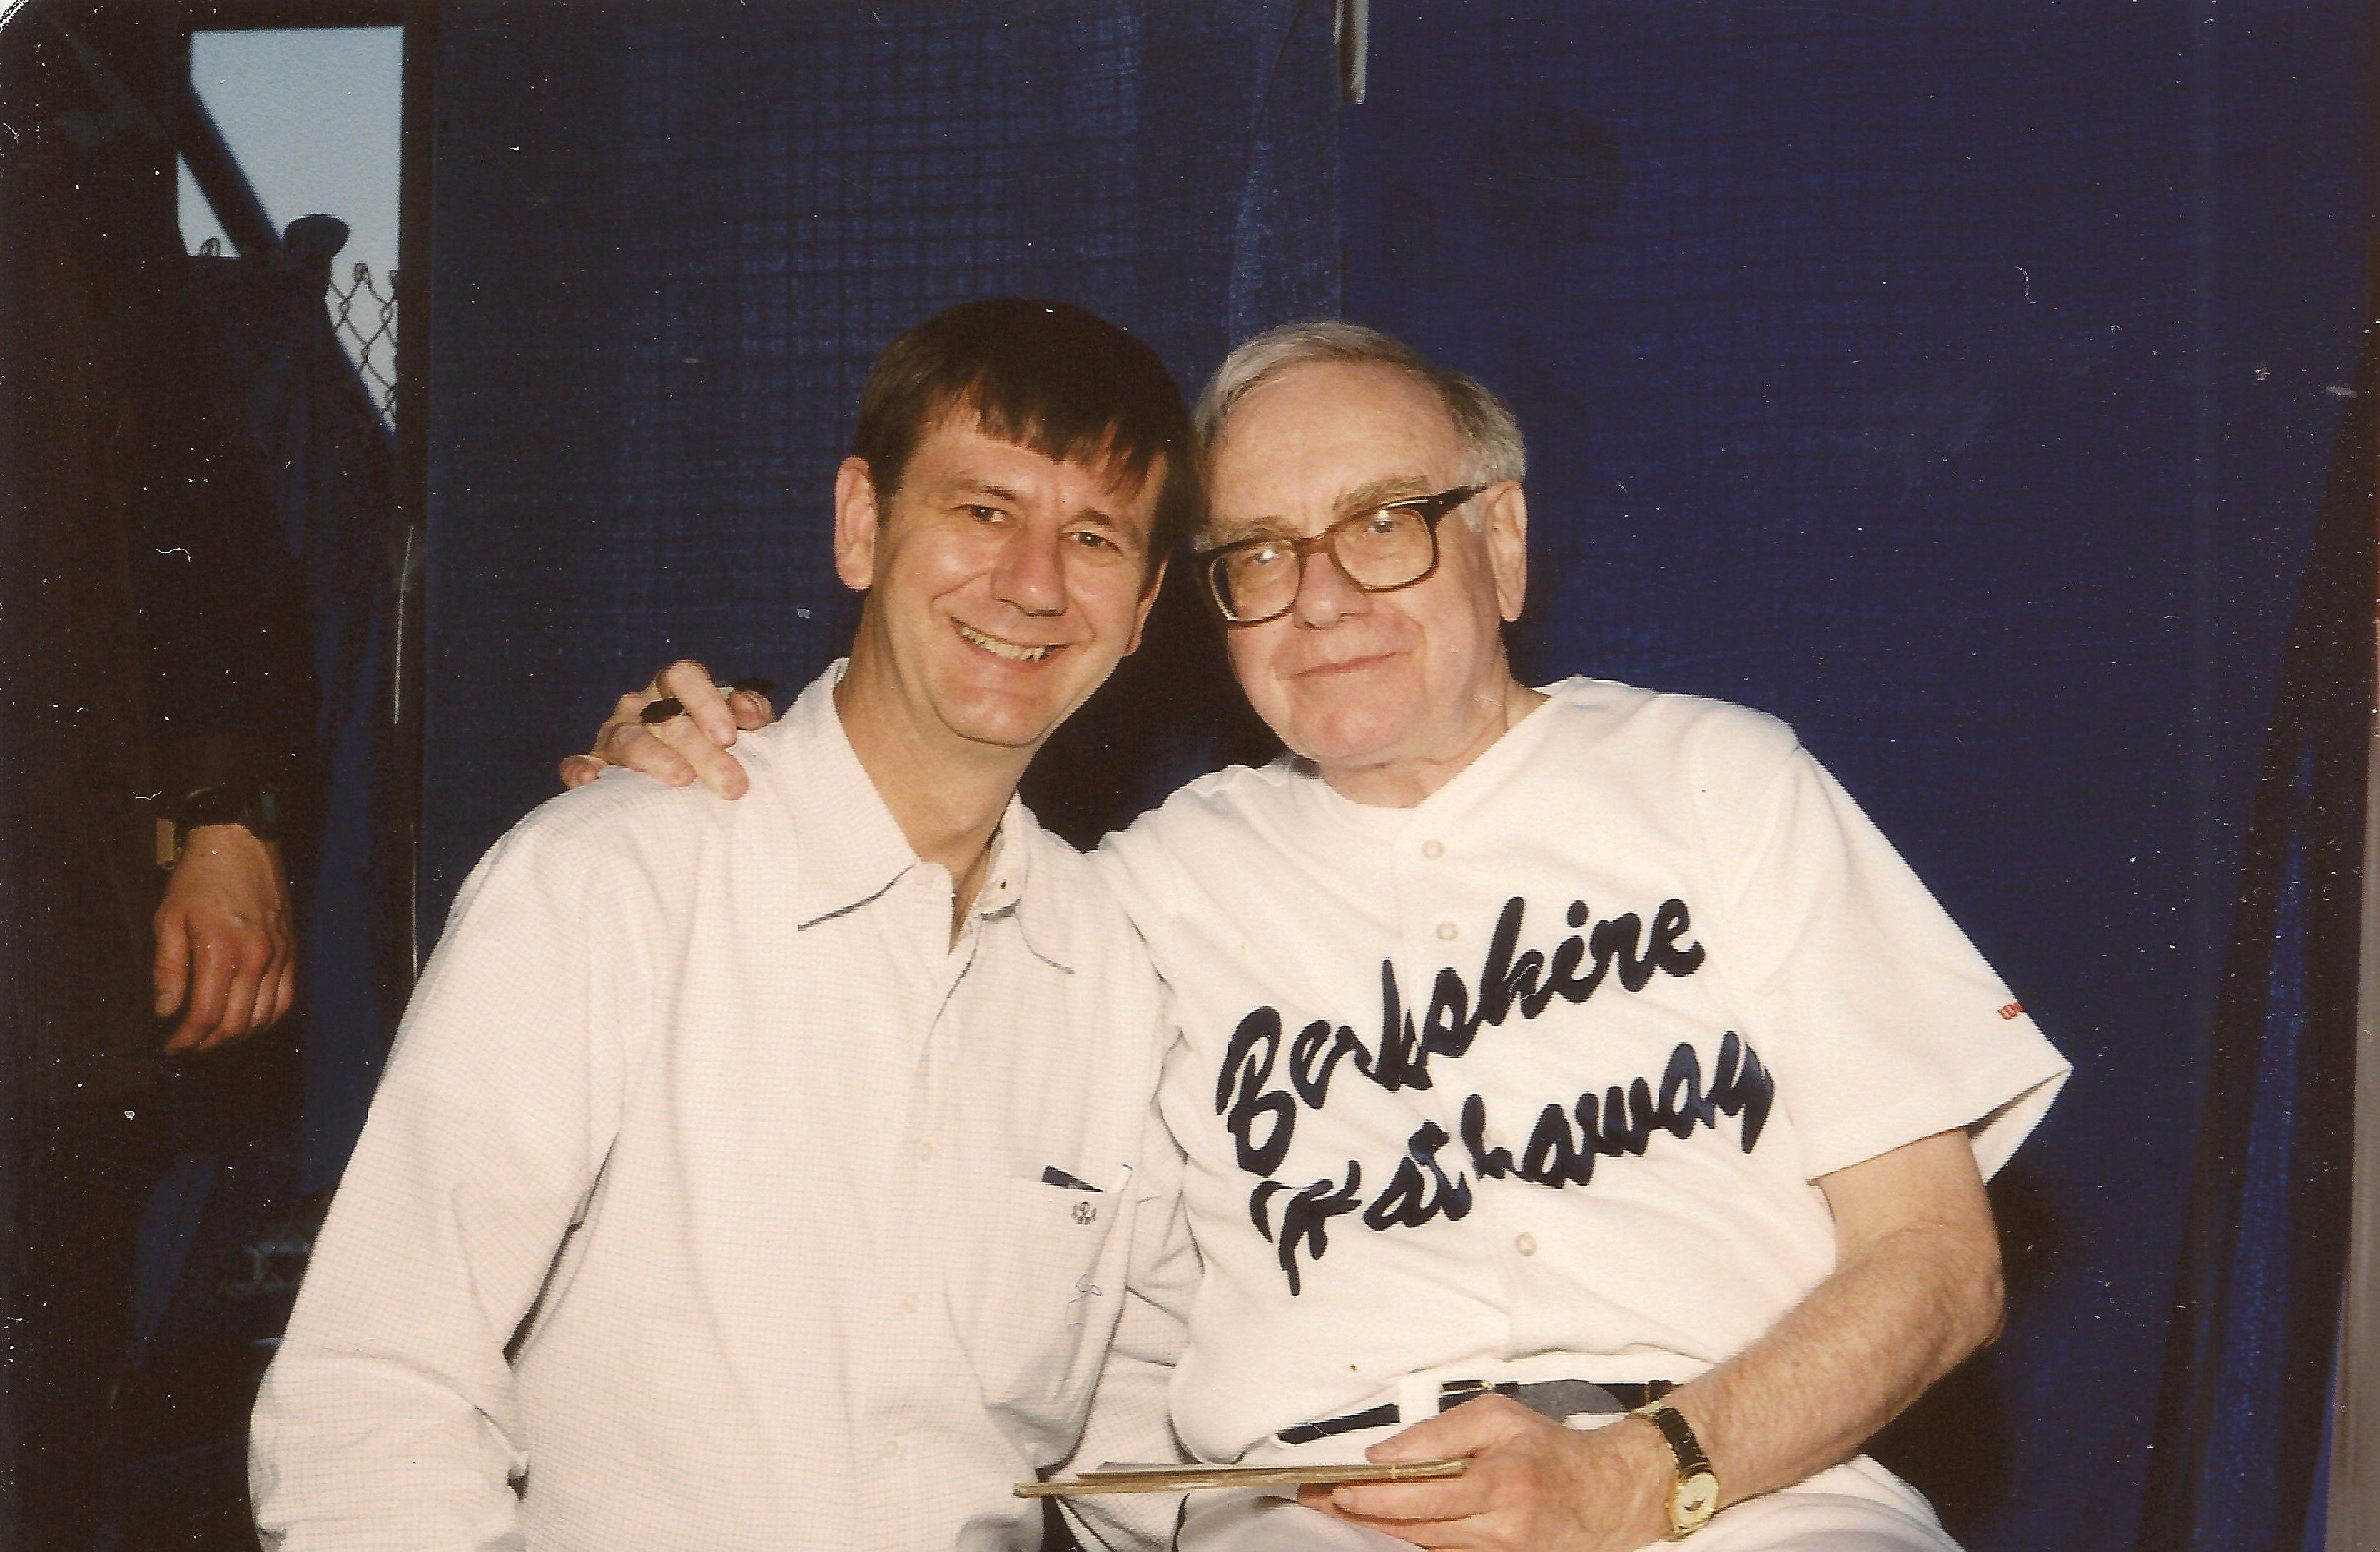 Still of Gus Rhodes and Warren Buffett